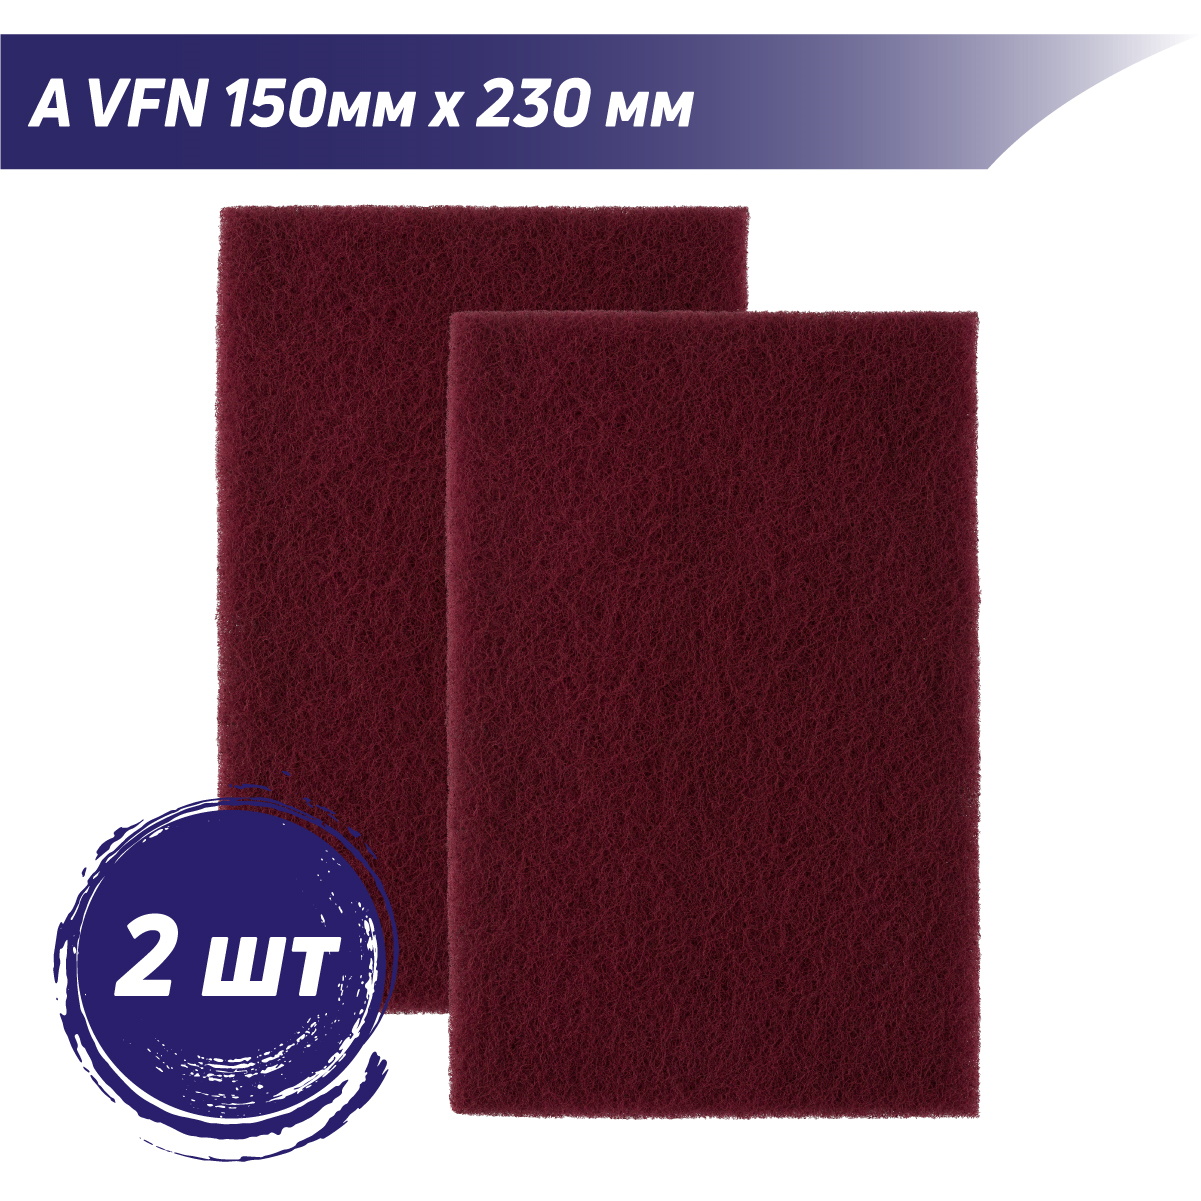 Лист шлифовальный универсальный A VFN бордовый PROBOS Forming N744 150mm x 230mm, 2 шт/уп